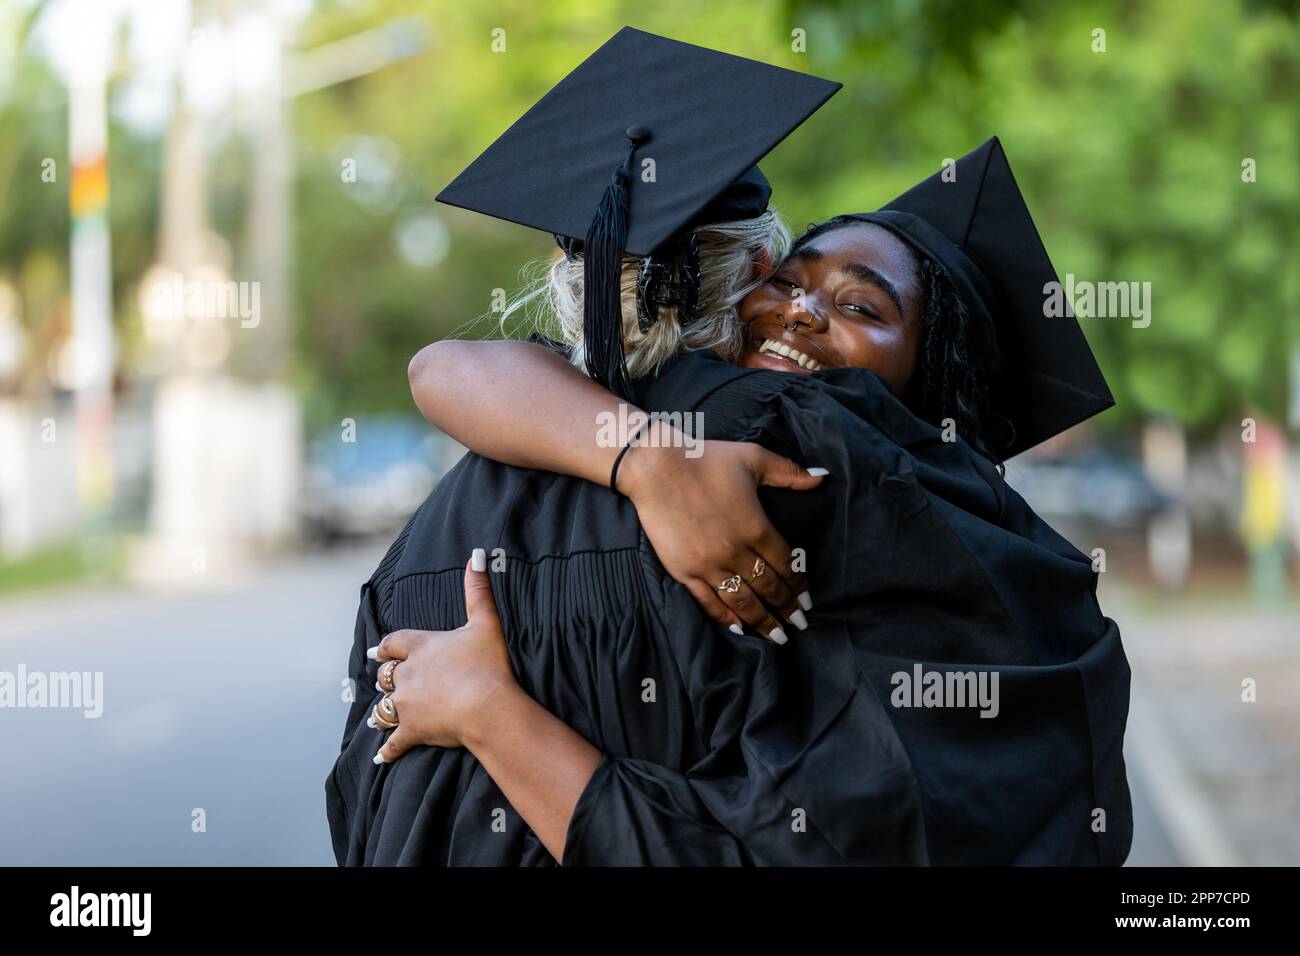 Schwarze und kaukasische weibliche College-Absolventen, die Kappen und Kittel tragen, umarmen sich nach dem Abschluss, sind stolz auf akademischen Erfolg, Abschlüsse und das Erlernen von Kenntnissen Stockfoto